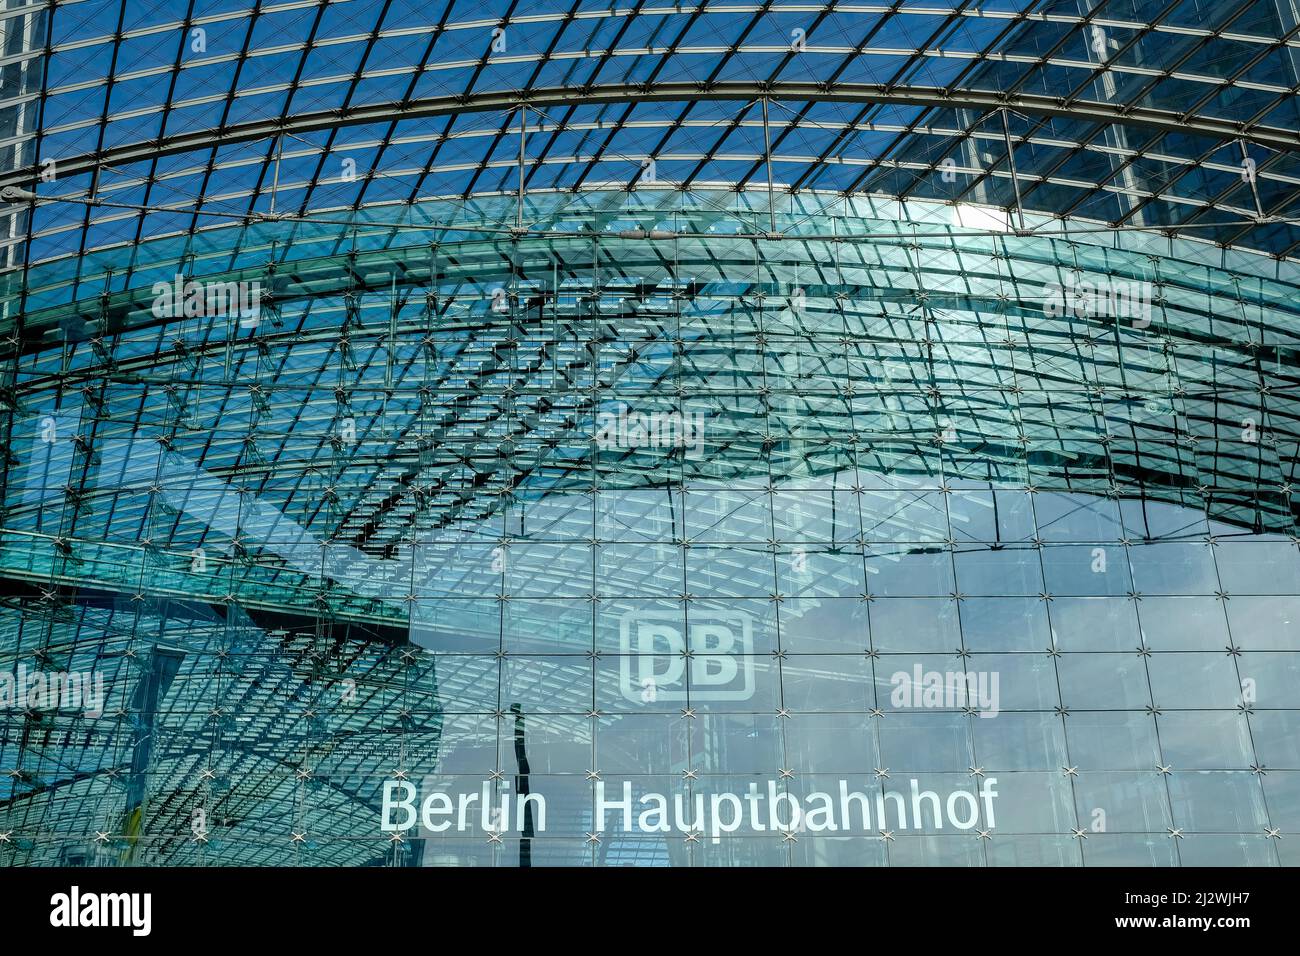 Berlín, Alemania. Fachada de la Hbf / Hauptbahnhof de Berlín. Actualmente la estación de tren es el punto central en recibir a las víctimas de guerra y refugiados ucranianos, Foto de stock